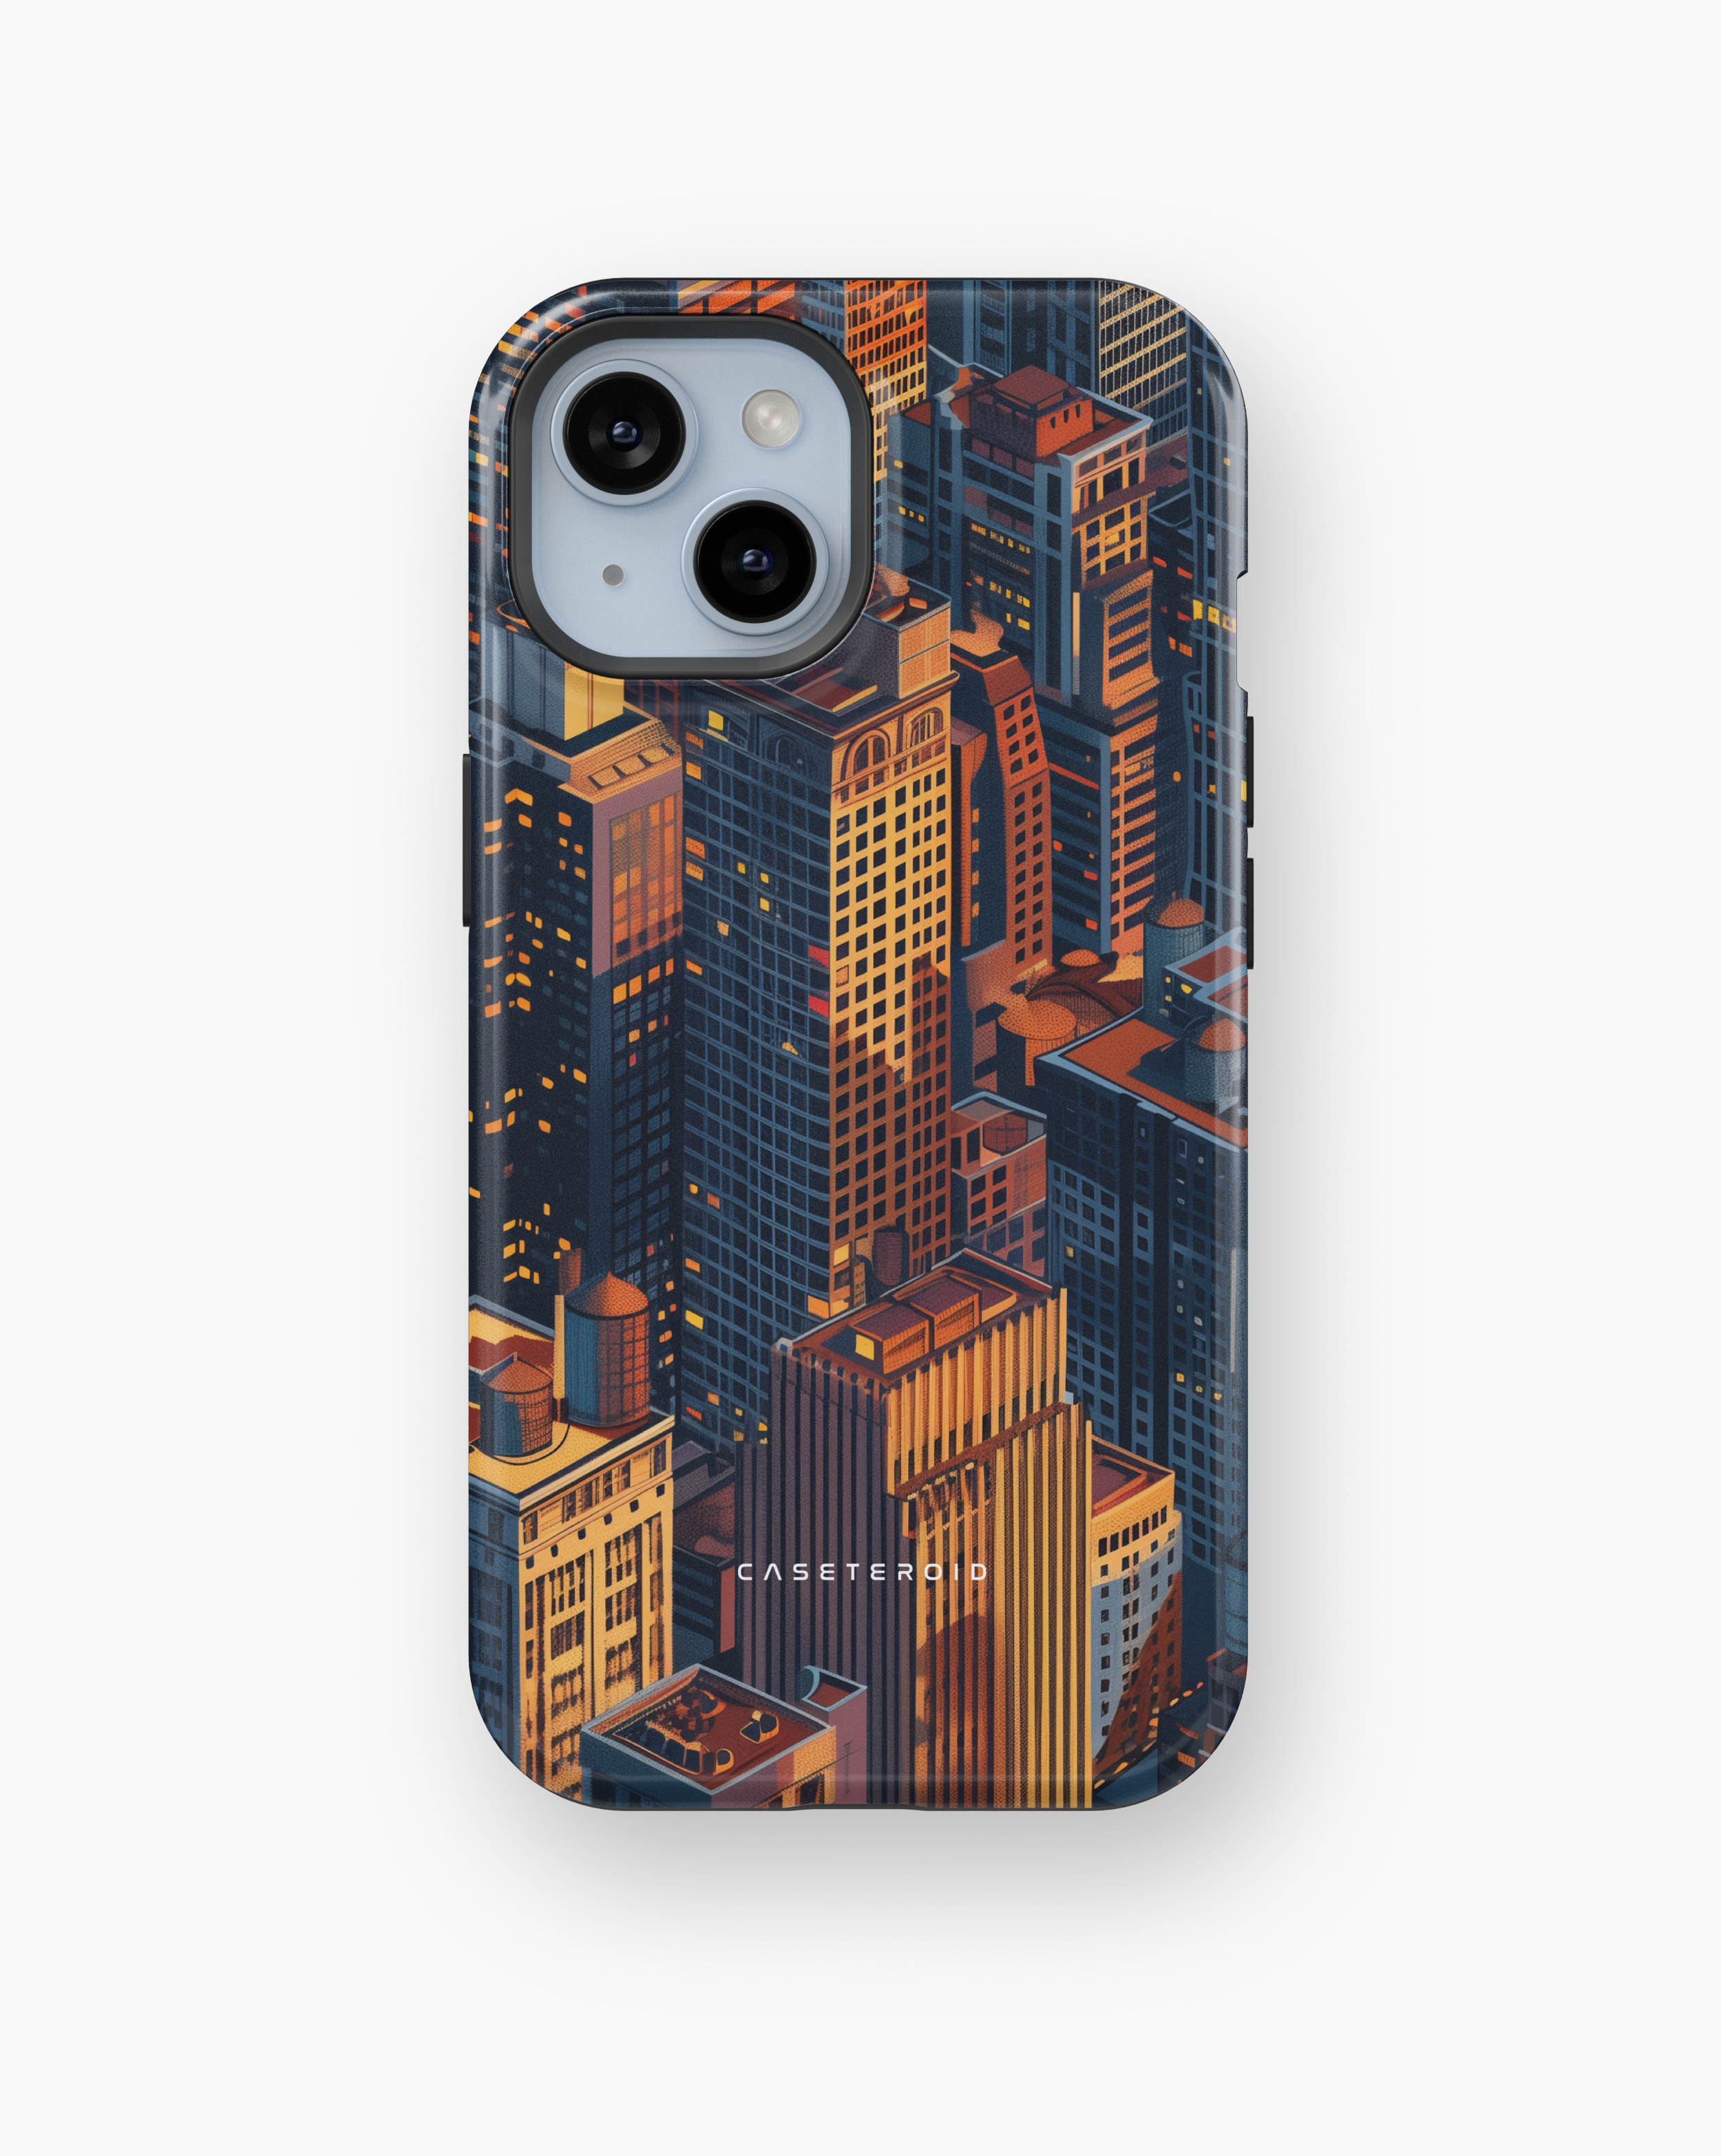 iPhone Tough Case - Metro Trek Urbanite - CASETEROID